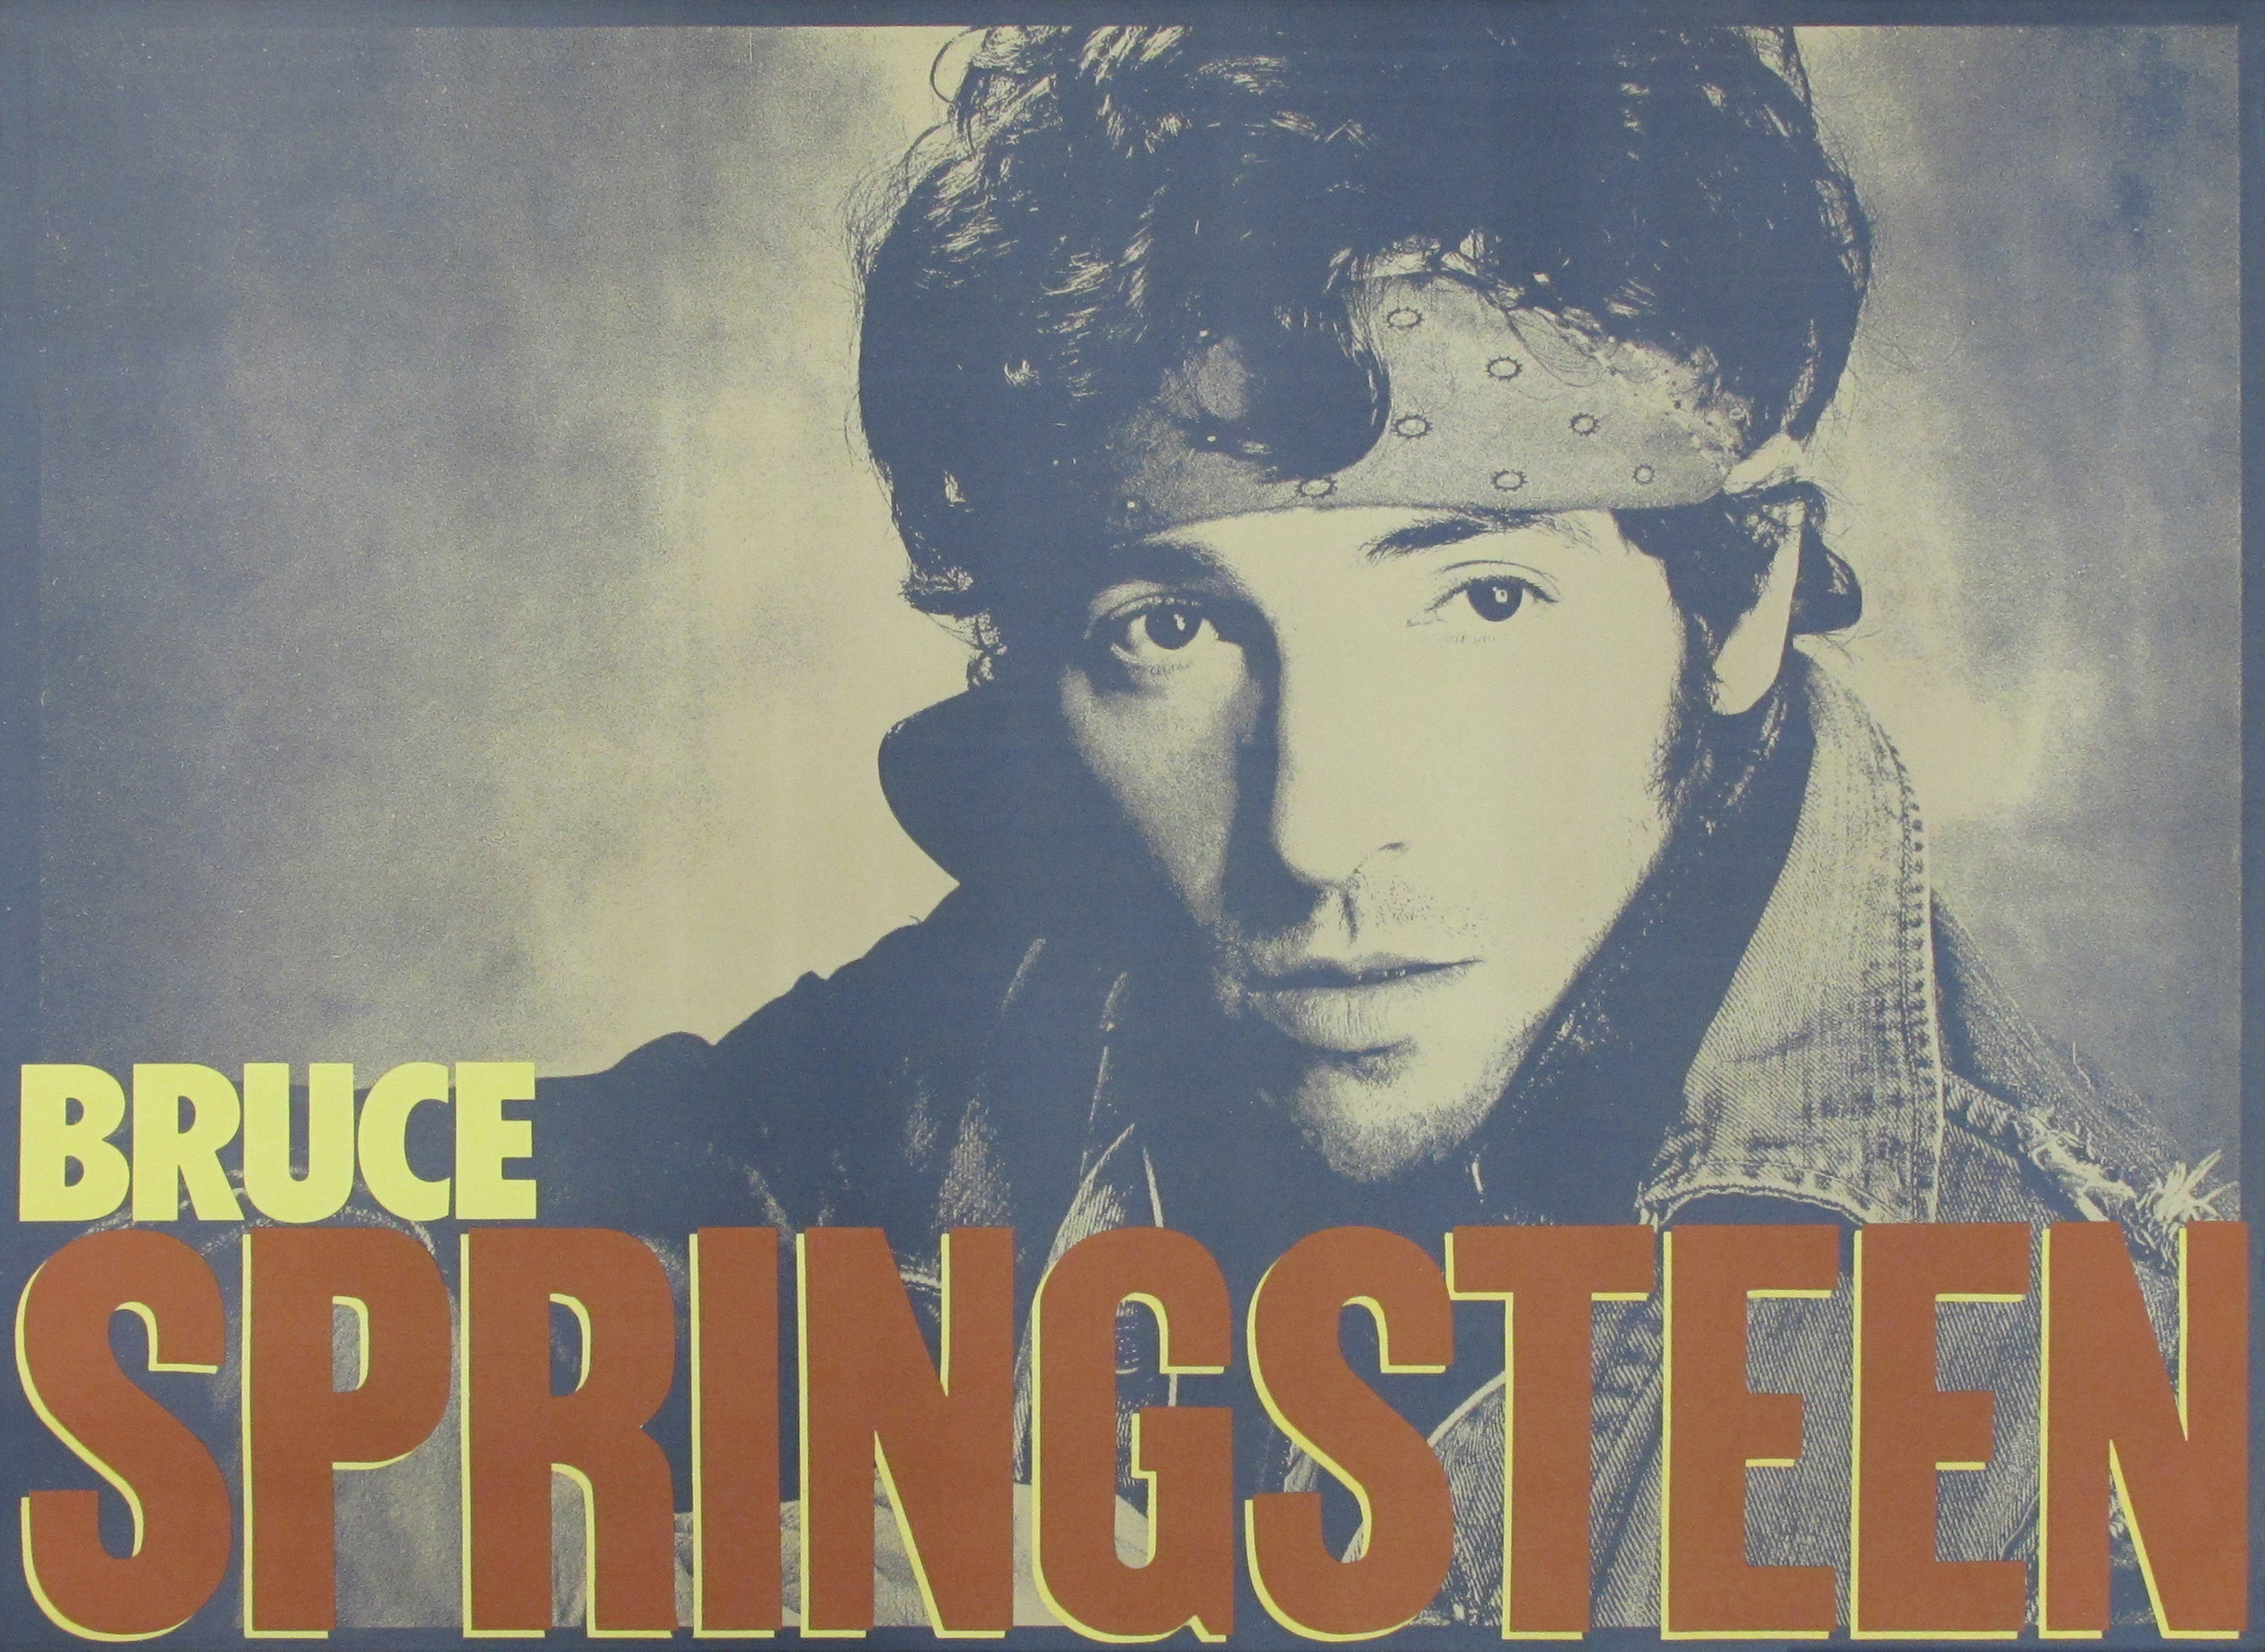 Bruce Springsteen Original Promotional Rock Poster